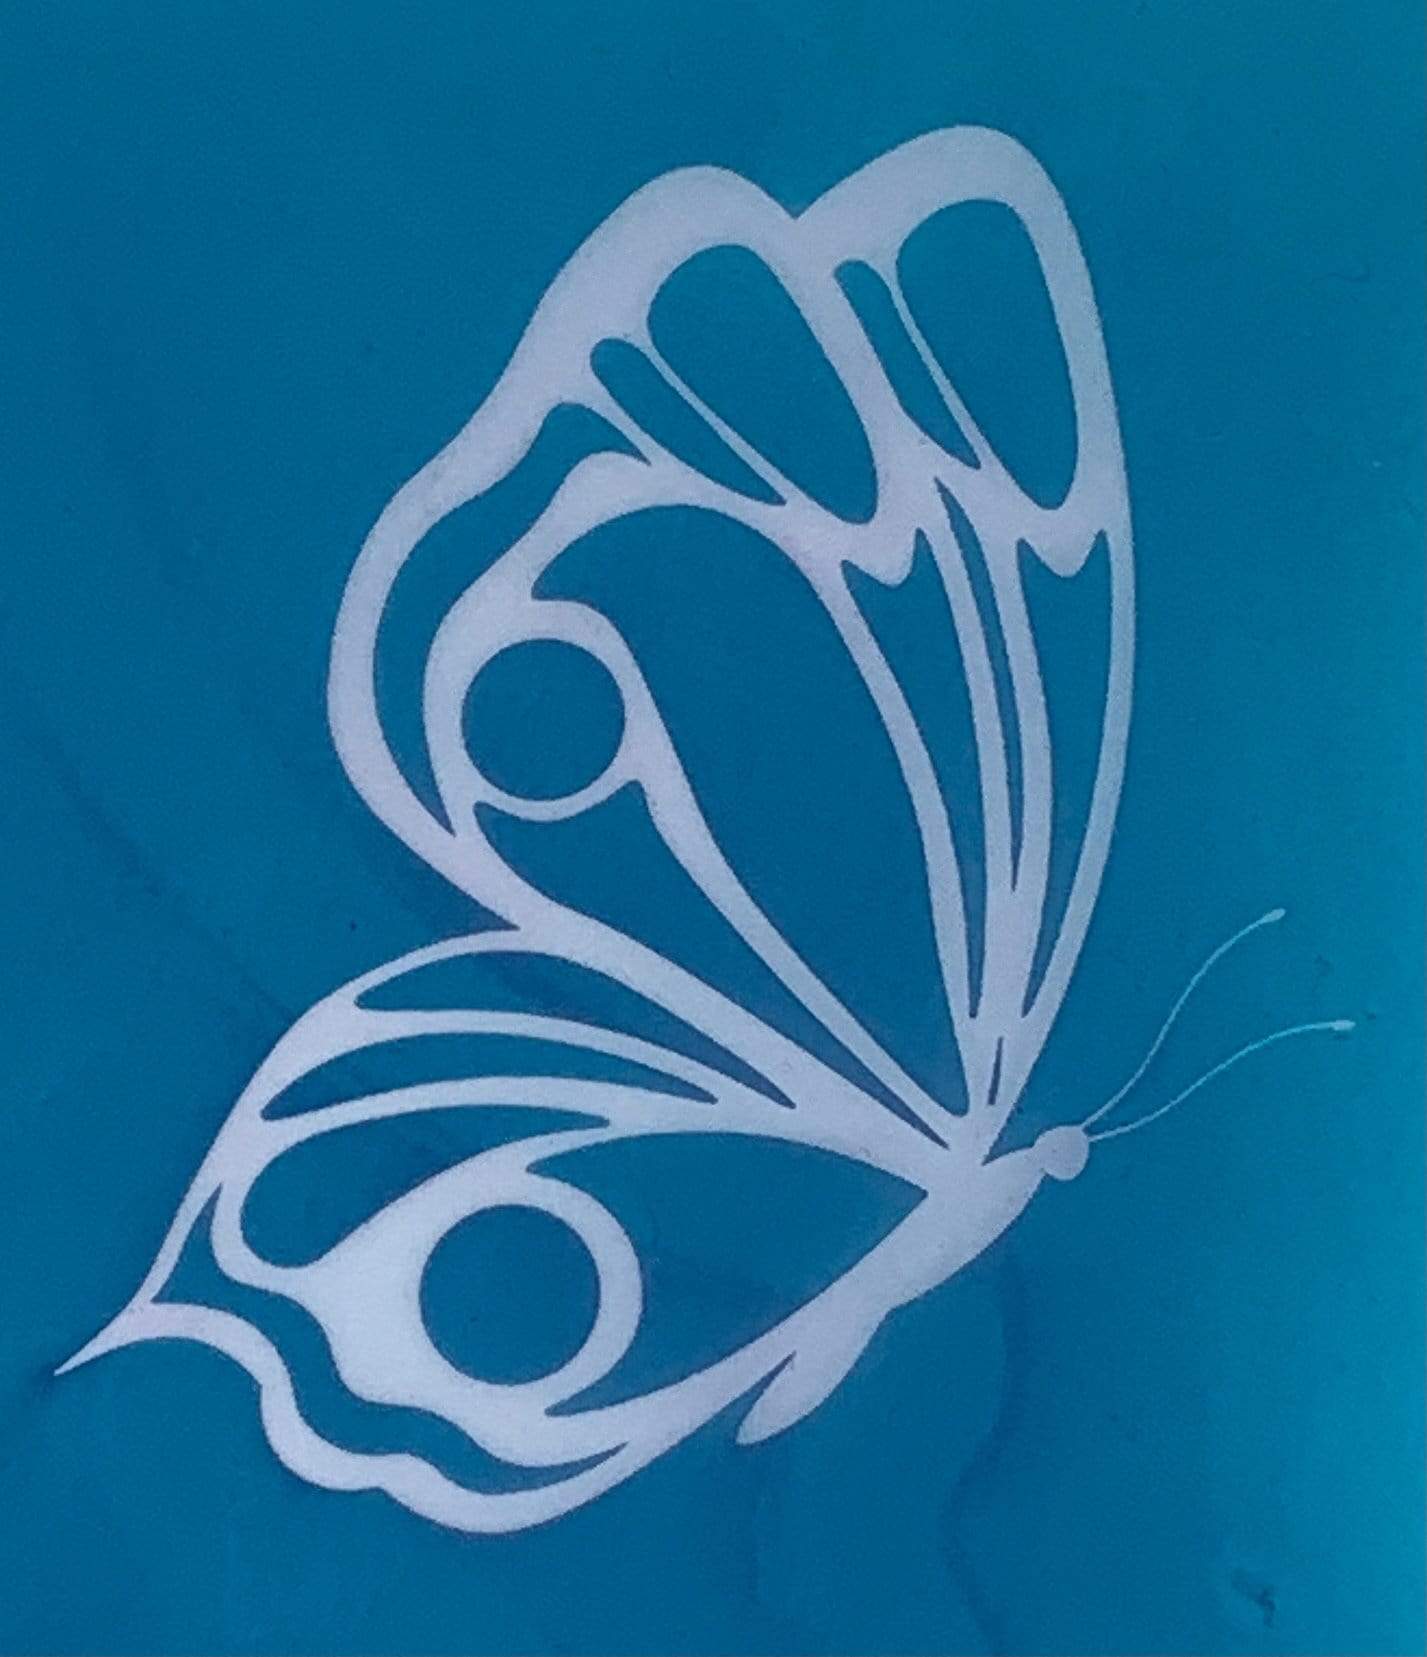 Butterflies Silk Screen